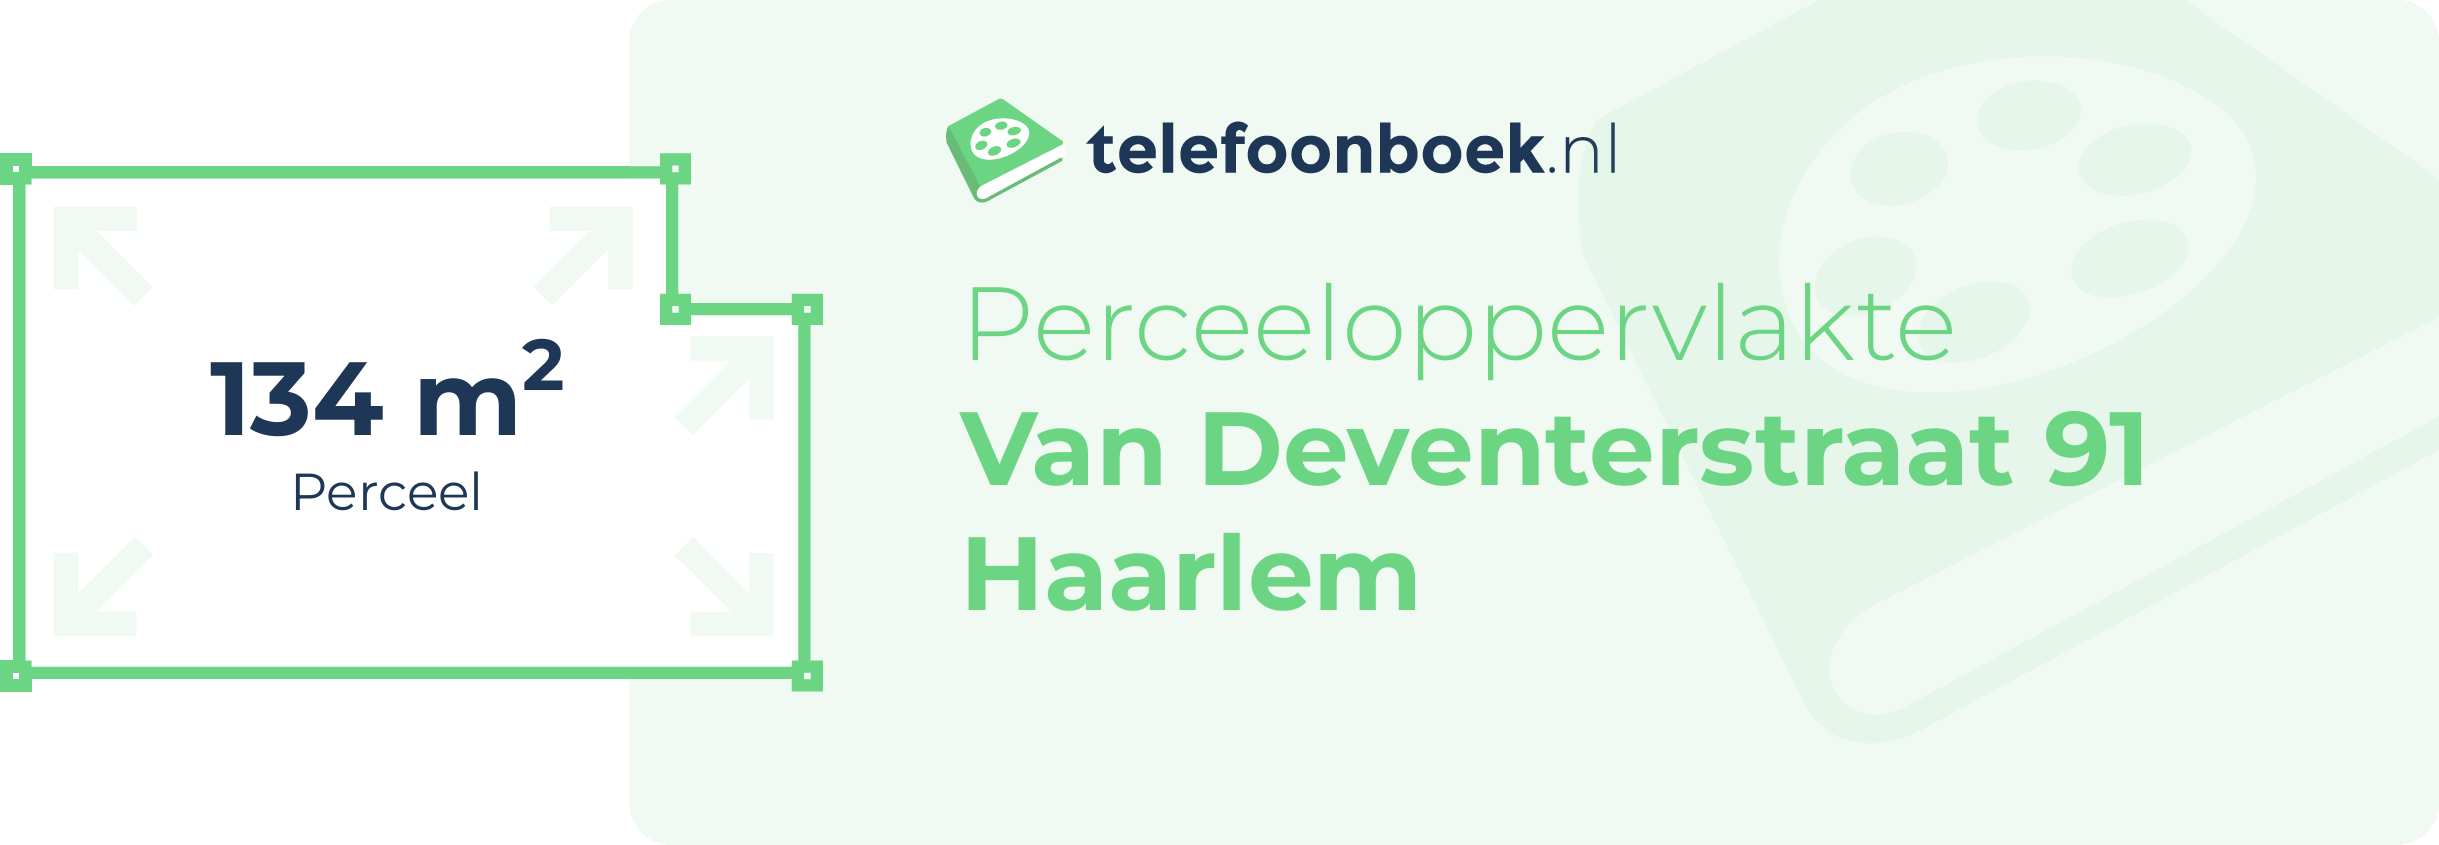 Perceeloppervlakte Van Deventerstraat 91 Haarlem